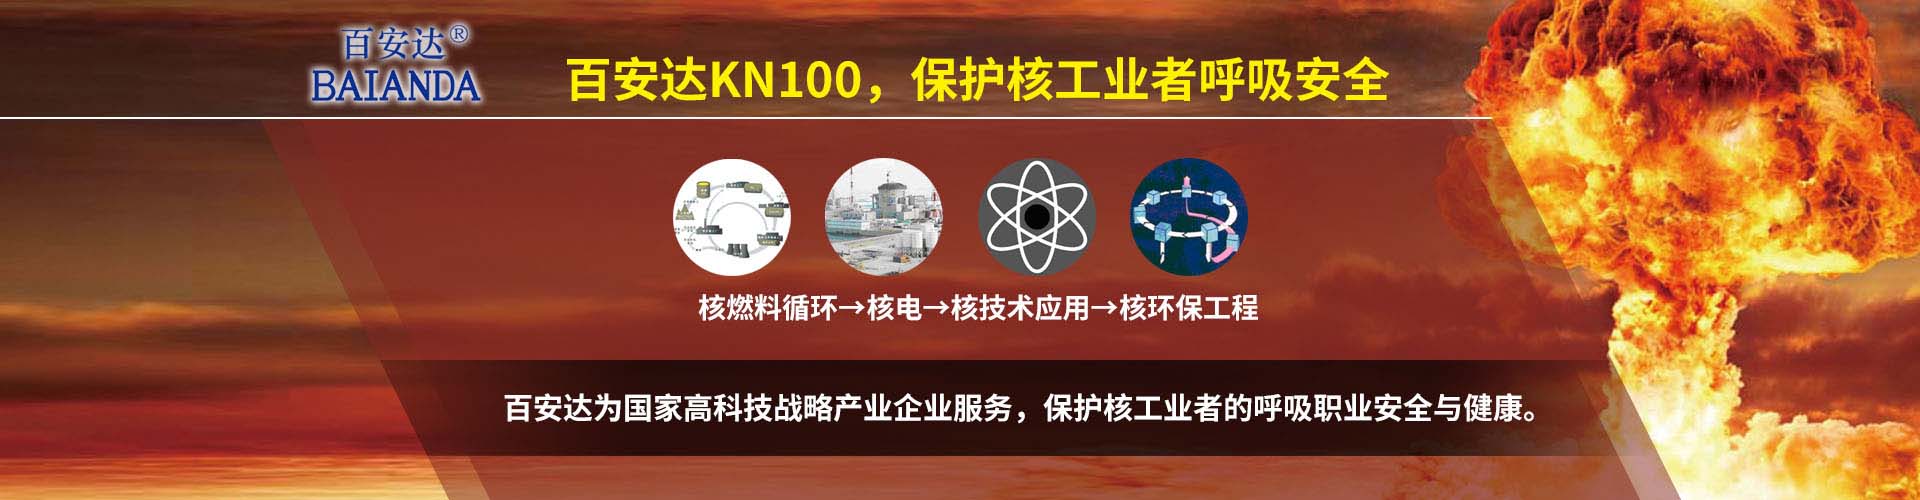 KN100防尘口罩是高效呼吸防护装备,过滤效率大于99.97%，可保护核工业者的呼吸安全